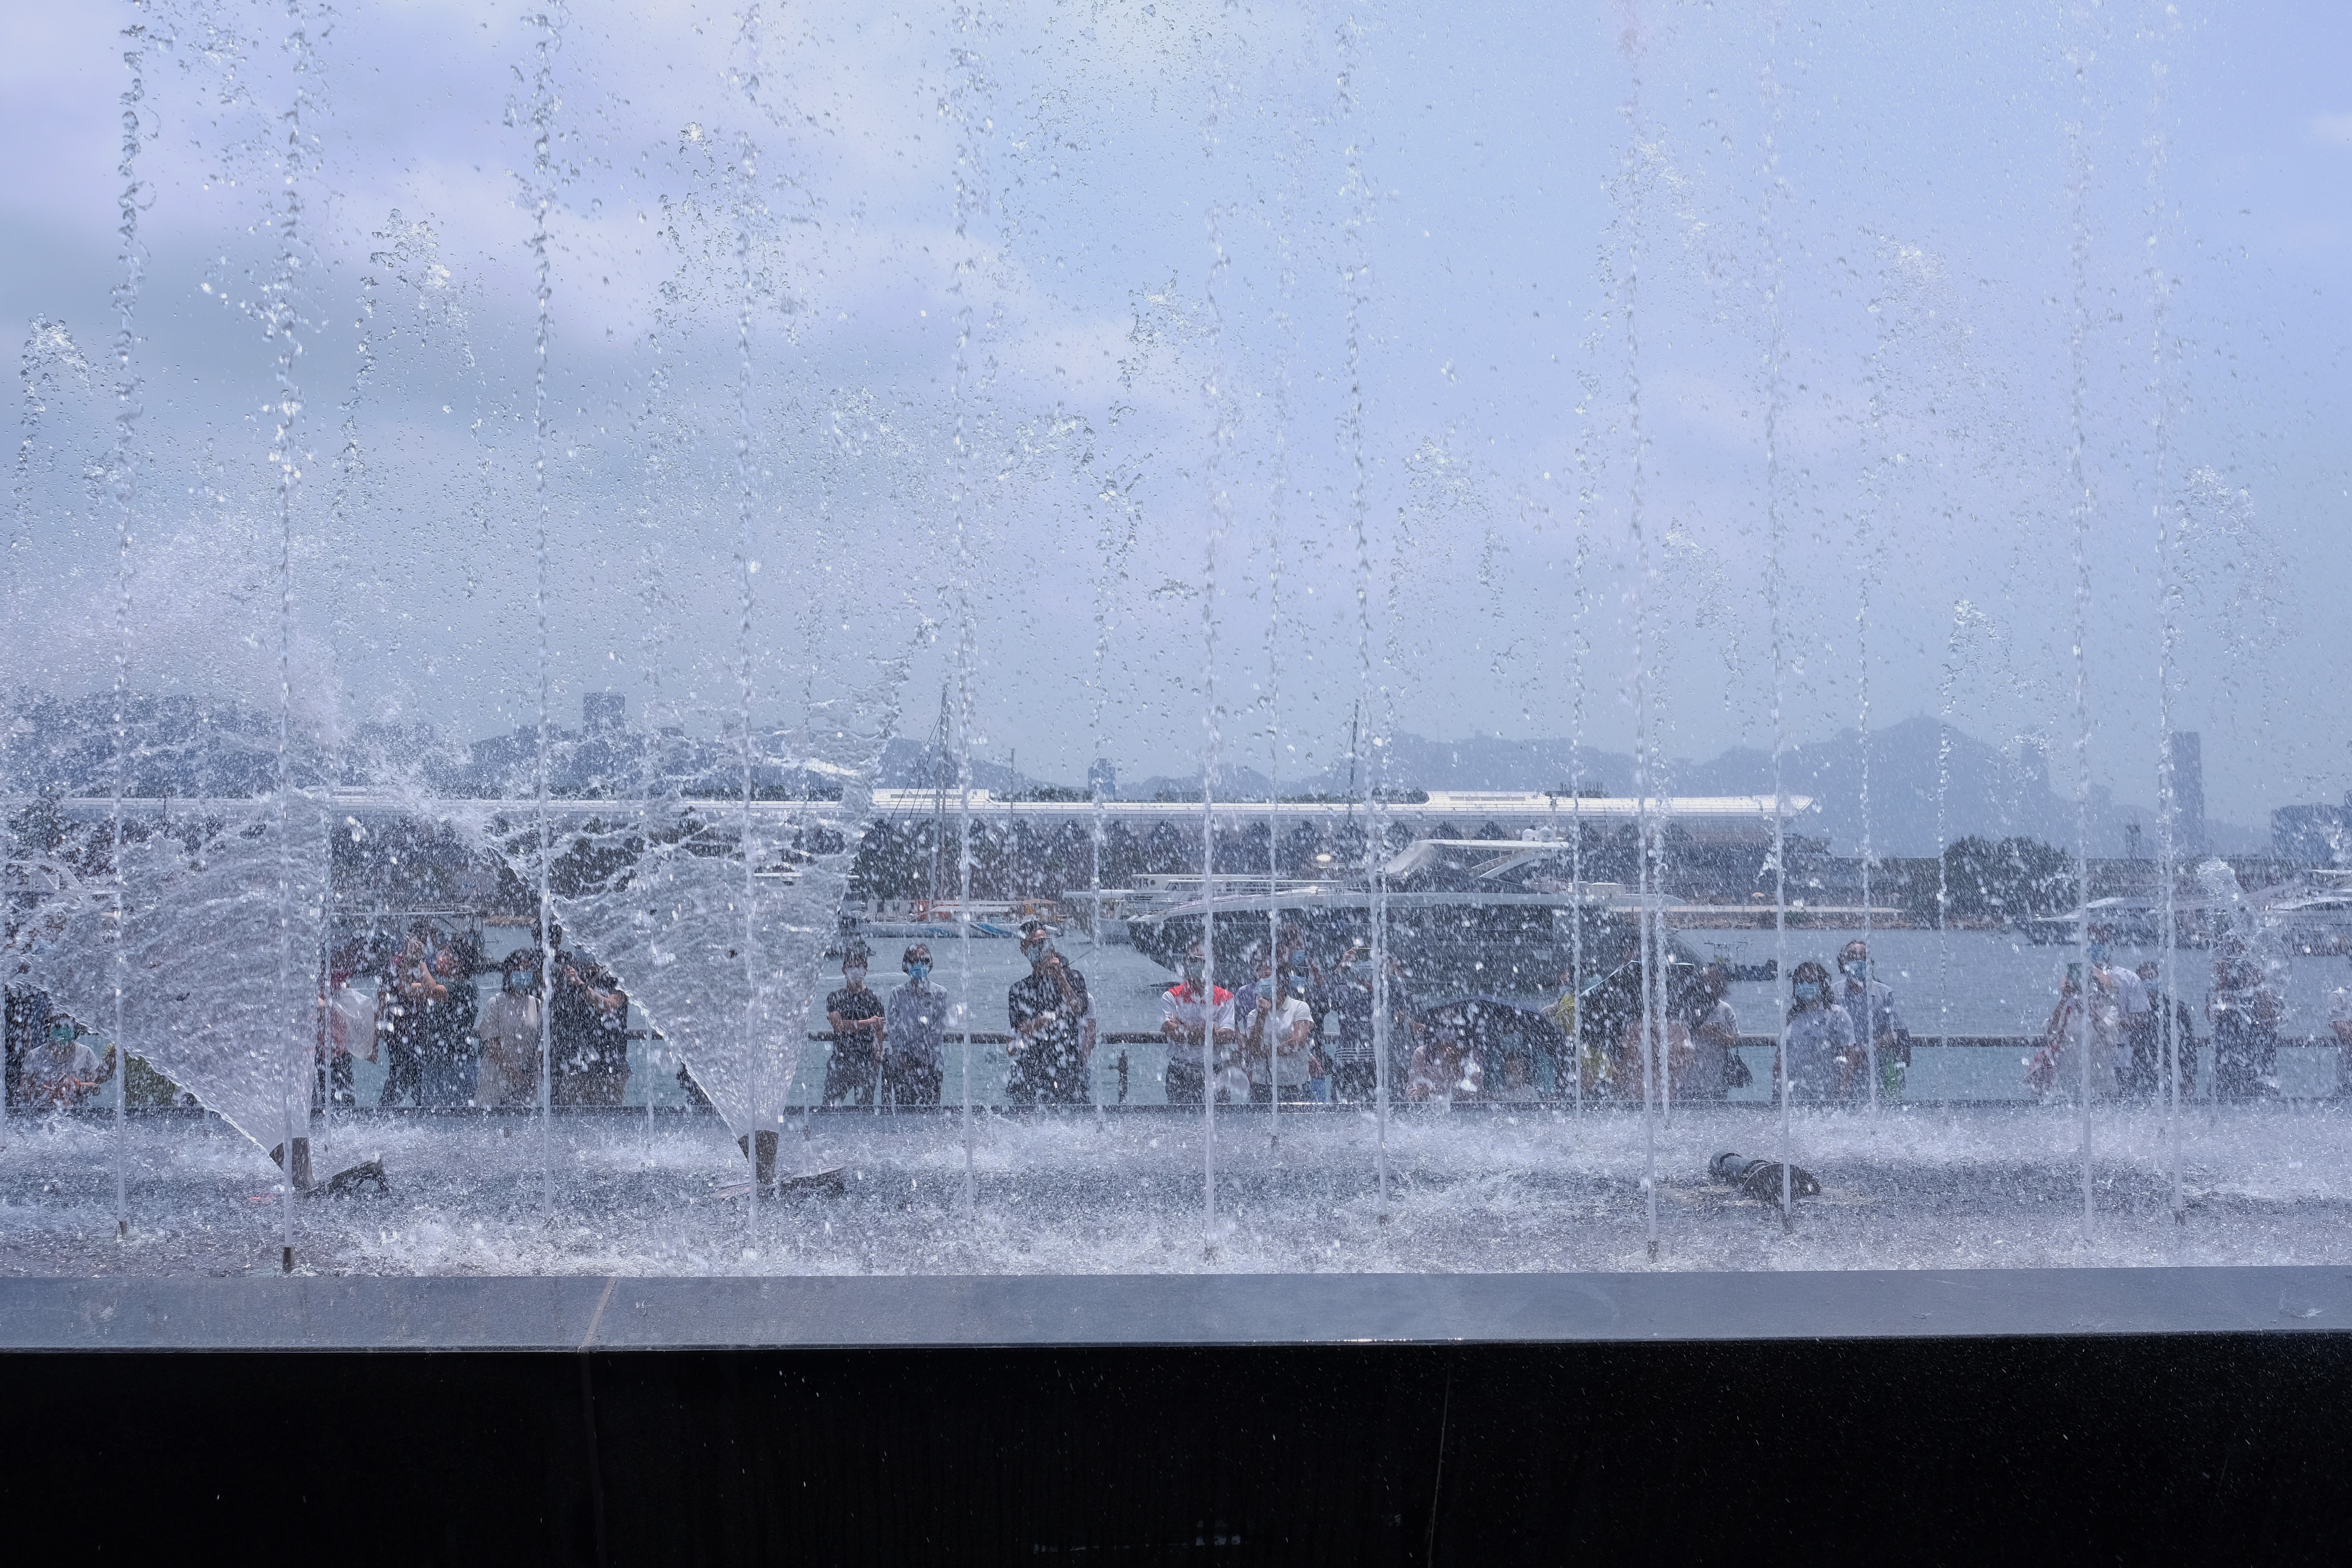 觀塘海濱音樂噴泉今日（22日）啟用。音樂噴泉項目佔地約3740平方米，包括音樂噴泉、互動嬉水區及休憩草地。音樂噴泉以電腦程式控制，除靜態背景多樣噴水外，每日表演時段更會結合多首名曲進行表演，其中一首曲目特別由香港管弦樂團演奏，晚間表演更會揉合幻變燈光。項目共有三個互動嬉水區，各嬉水區內設有感應裝置，當感應到遊人接近時，不同花式的噴咀會噴出形態各異的水柱，讓遊人互動玩樂。噴泉由民政事務總署、建築署及康文署共同合作建成，是第四屆觀塘區議會建議推行的社區重點項目計劃。設施將進一步使觀塘海濱花園成為消閒玩樂的好去處，為市民帶來更多歡樂。（大公文匯全媒體記者麥鈞傑攝）